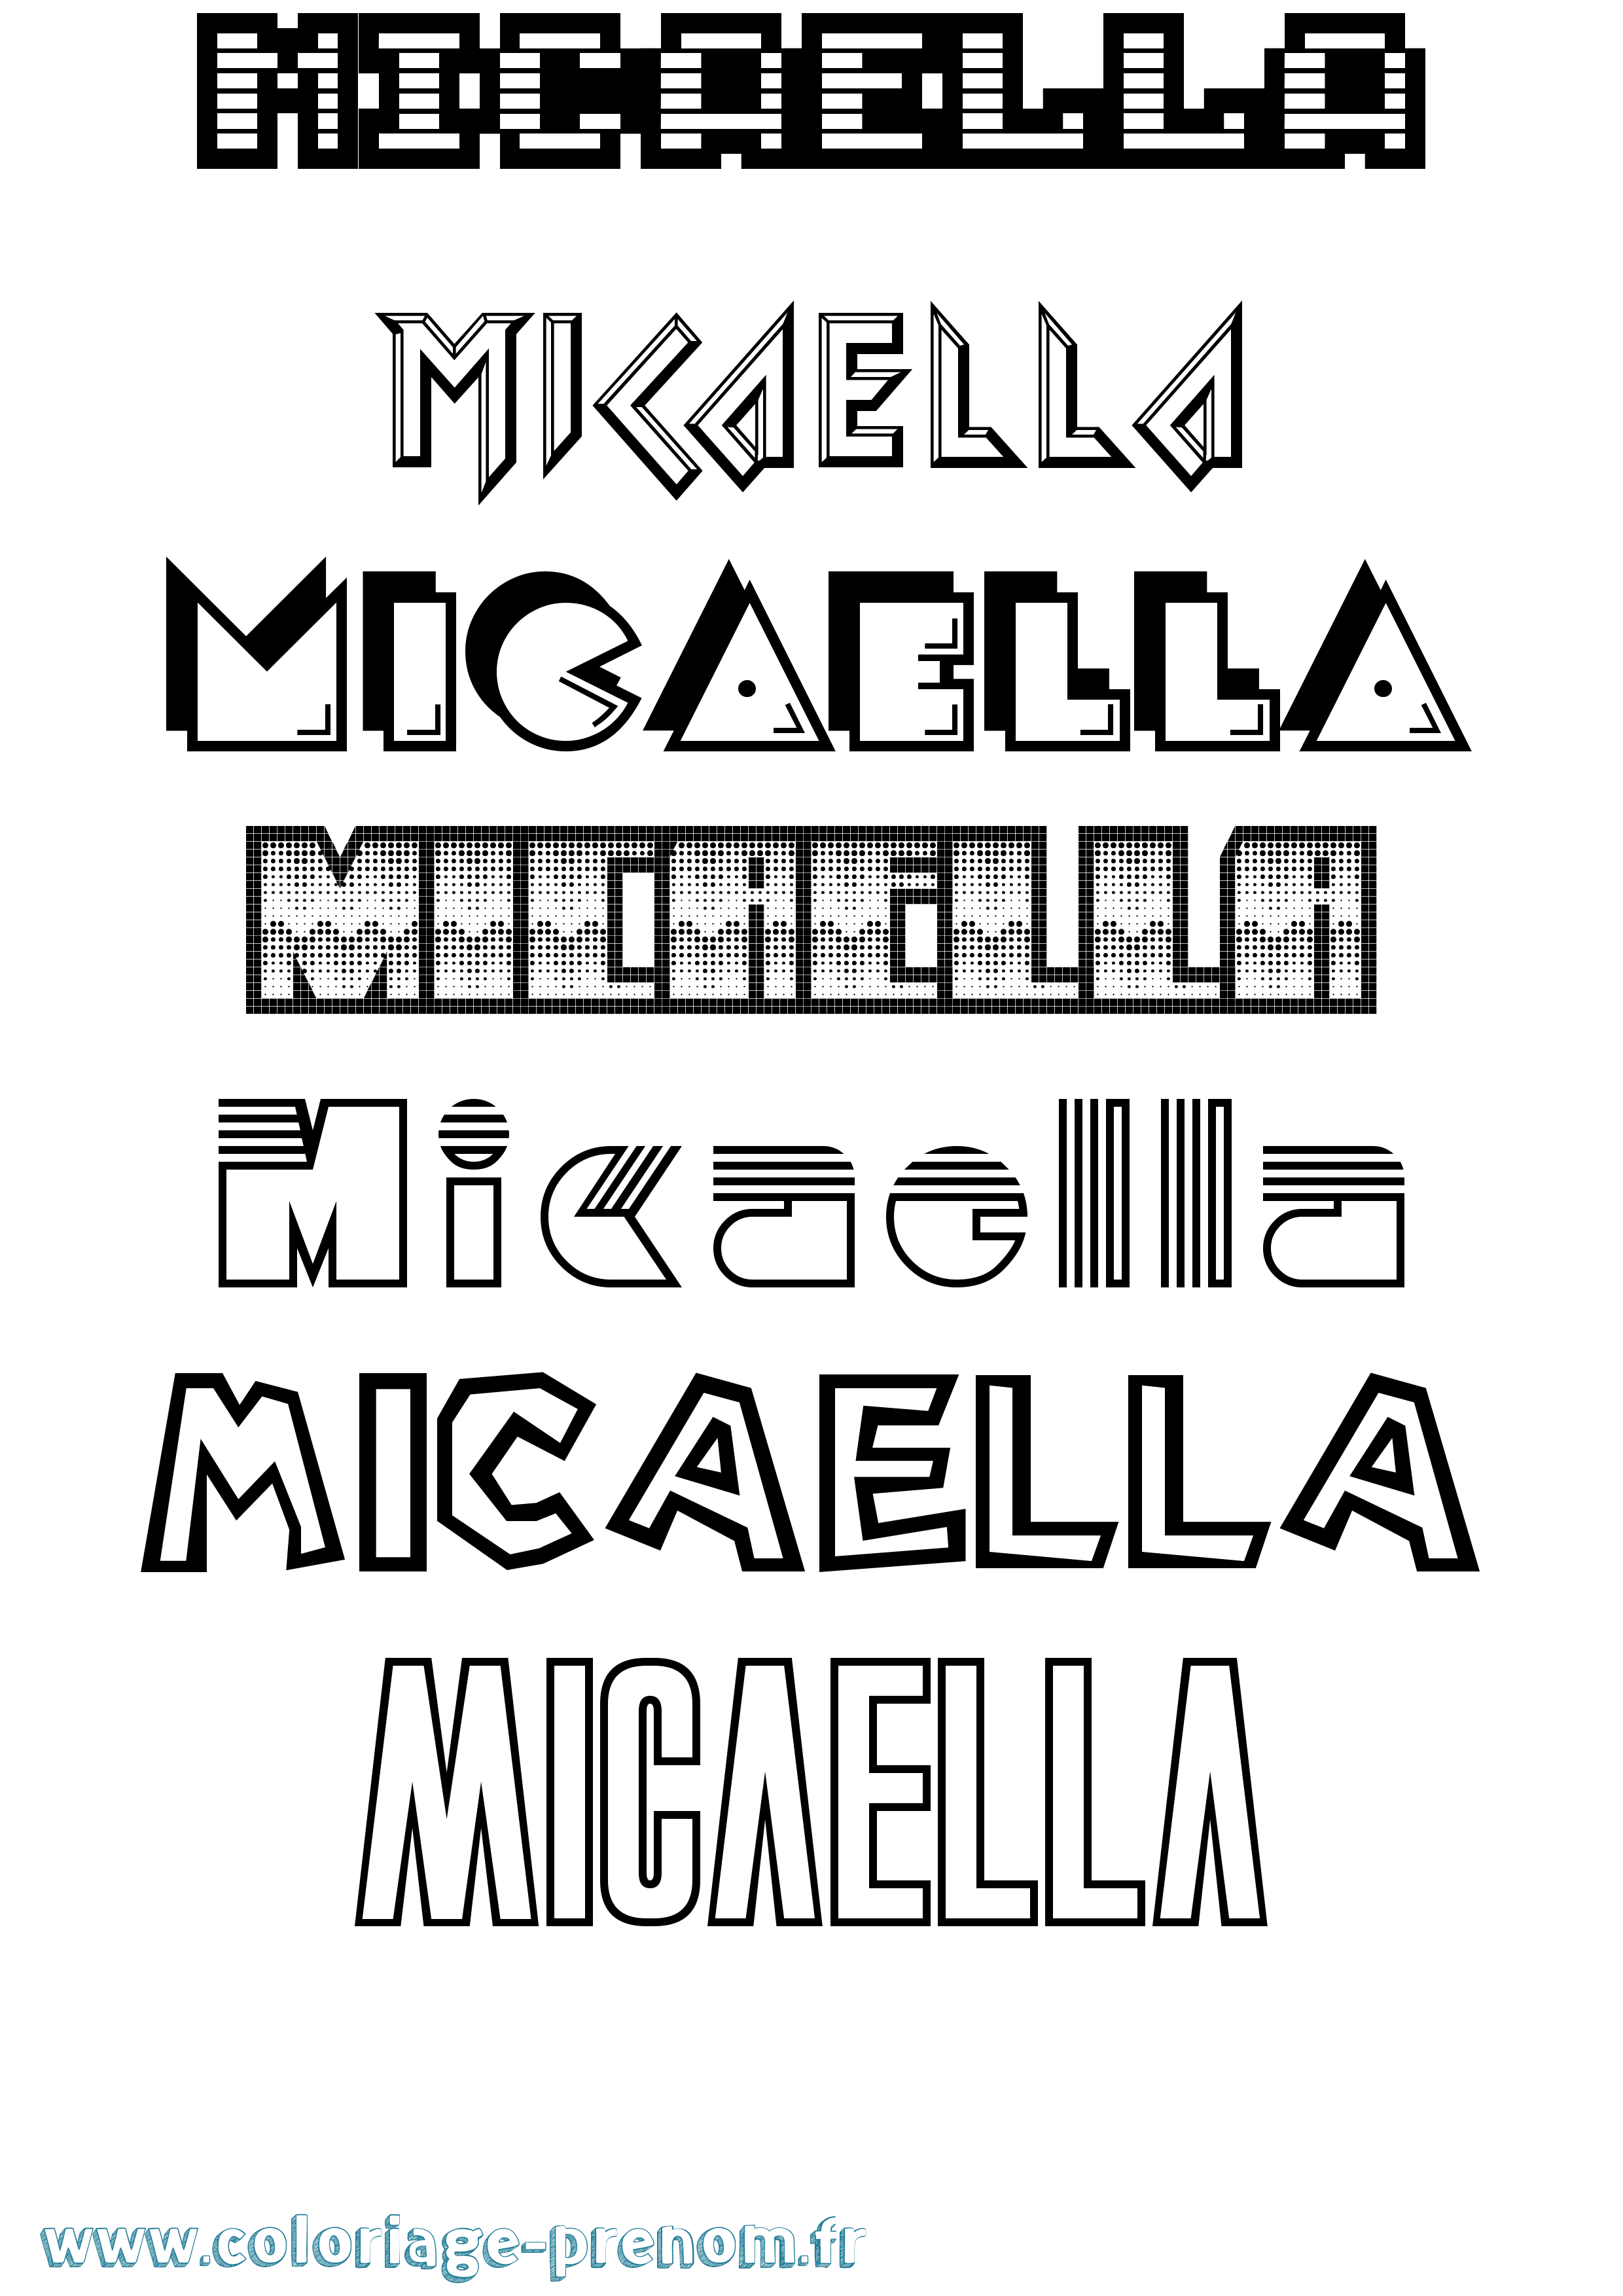 Coloriage prénom Micaella Jeux Vidéos